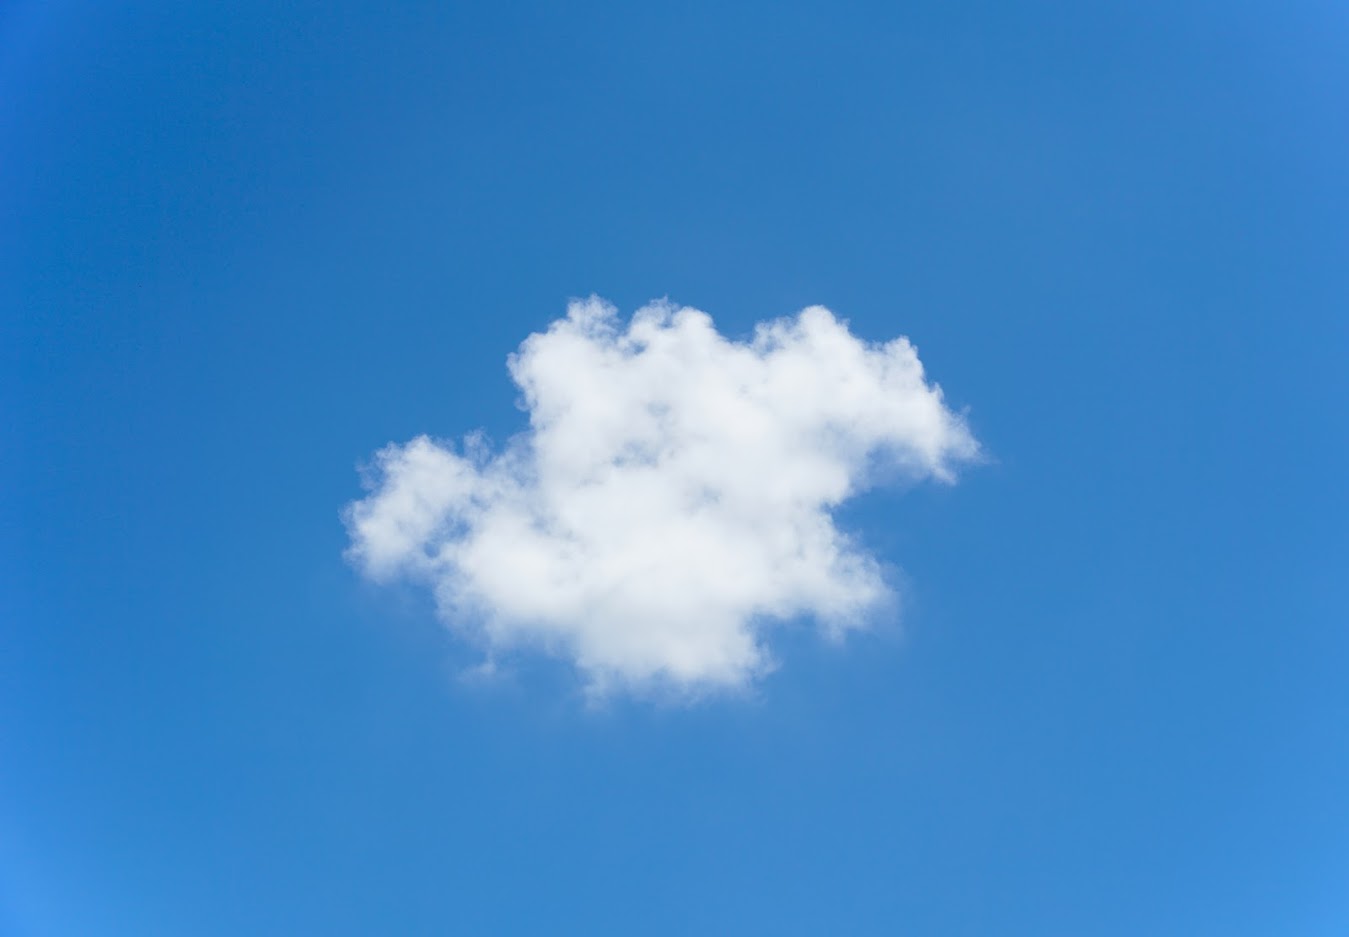 Không phải loại mây nào cũng giống nhau, mà loại mây trên hành tinh này lại đặc biệt đến vậy. Hãy đón xem hình ảnh để khám phá sự kỳ diệu của khoảng trời xanh.